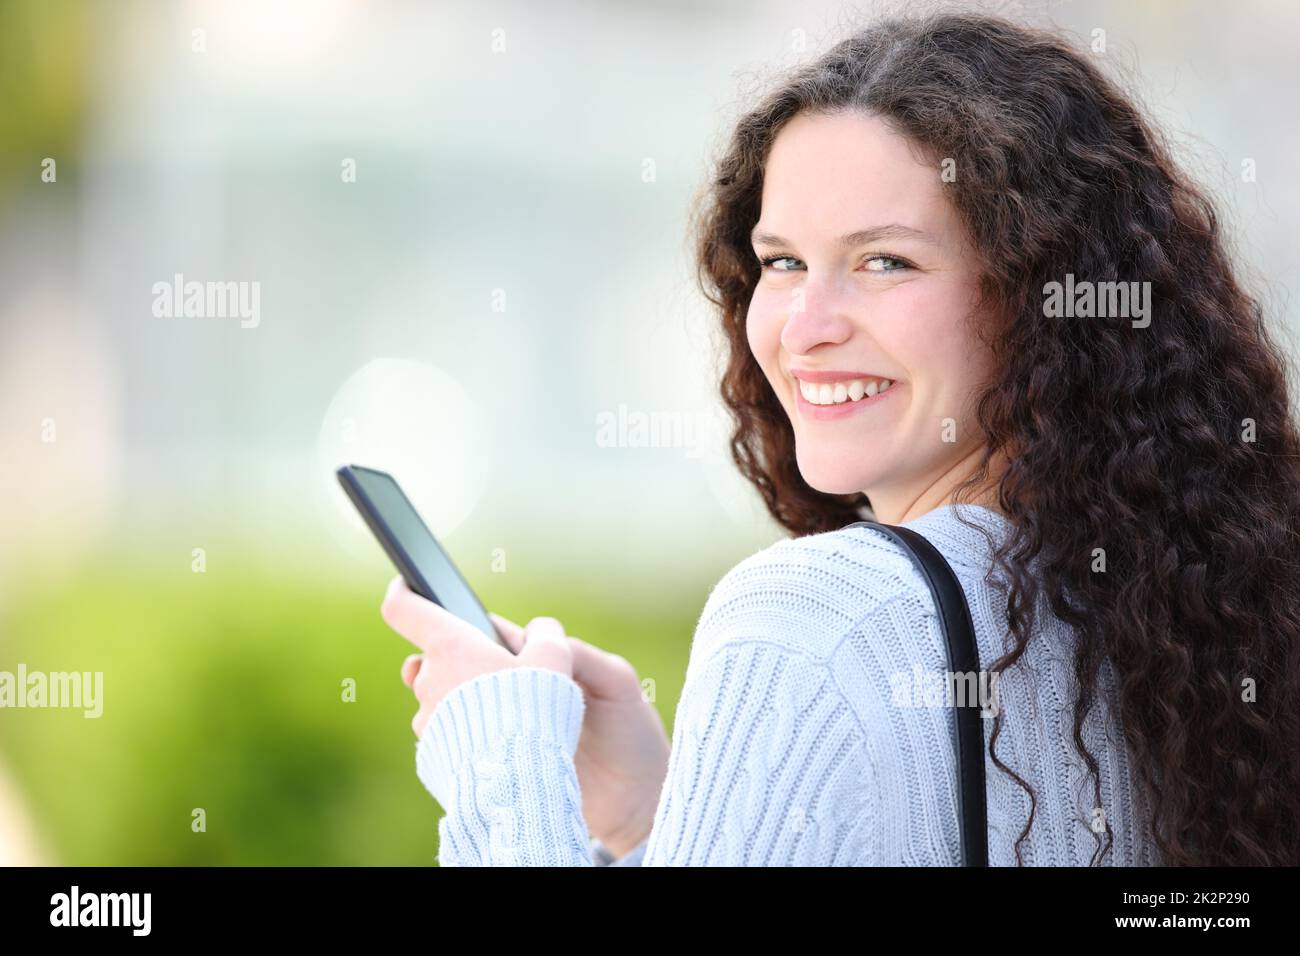 Une femme heureuse tenant un téléphone portable regarde l'appareil photo dans la rue Banque D'Images